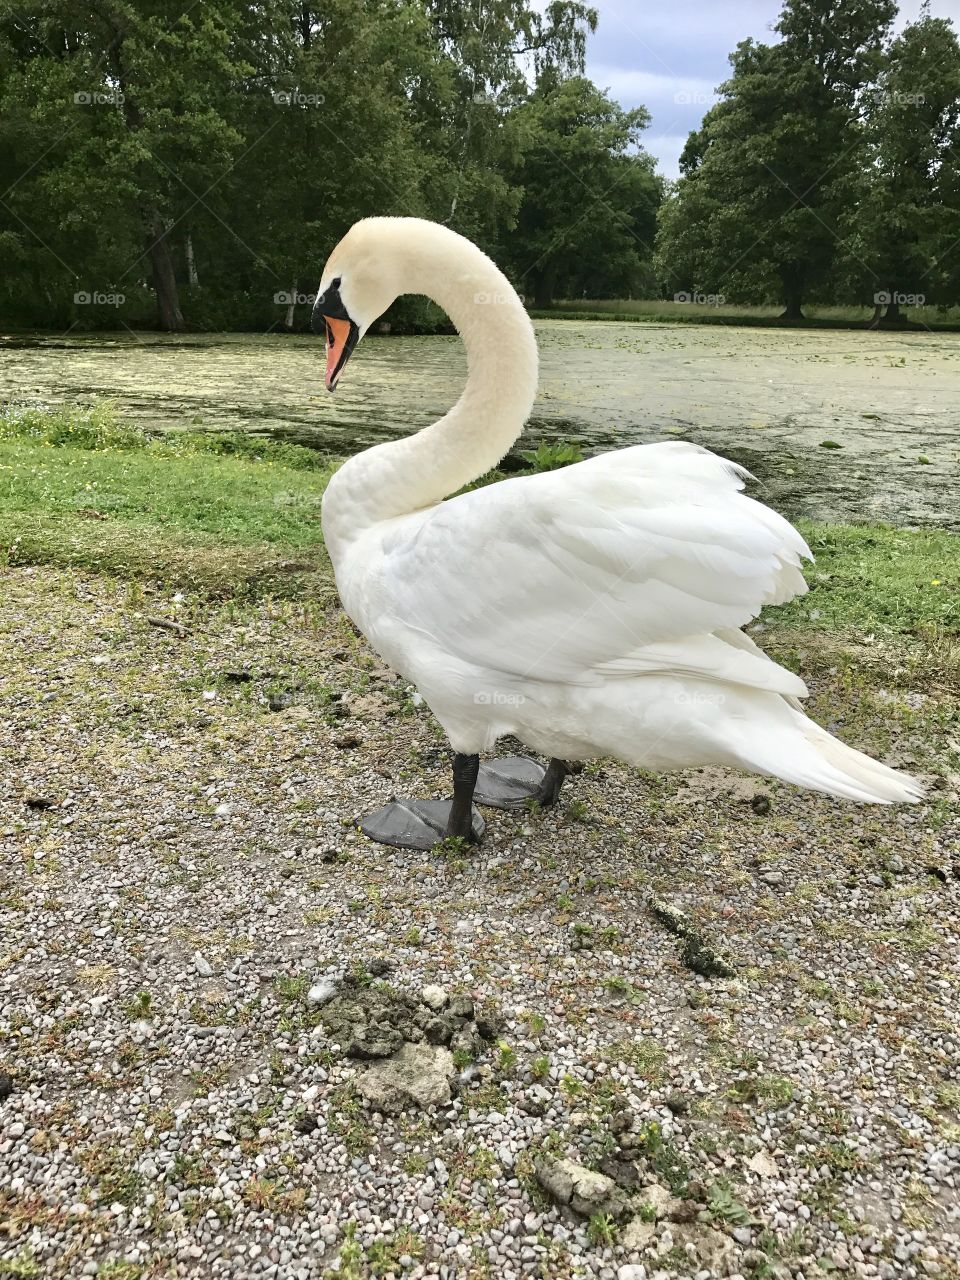 The beautiful swan